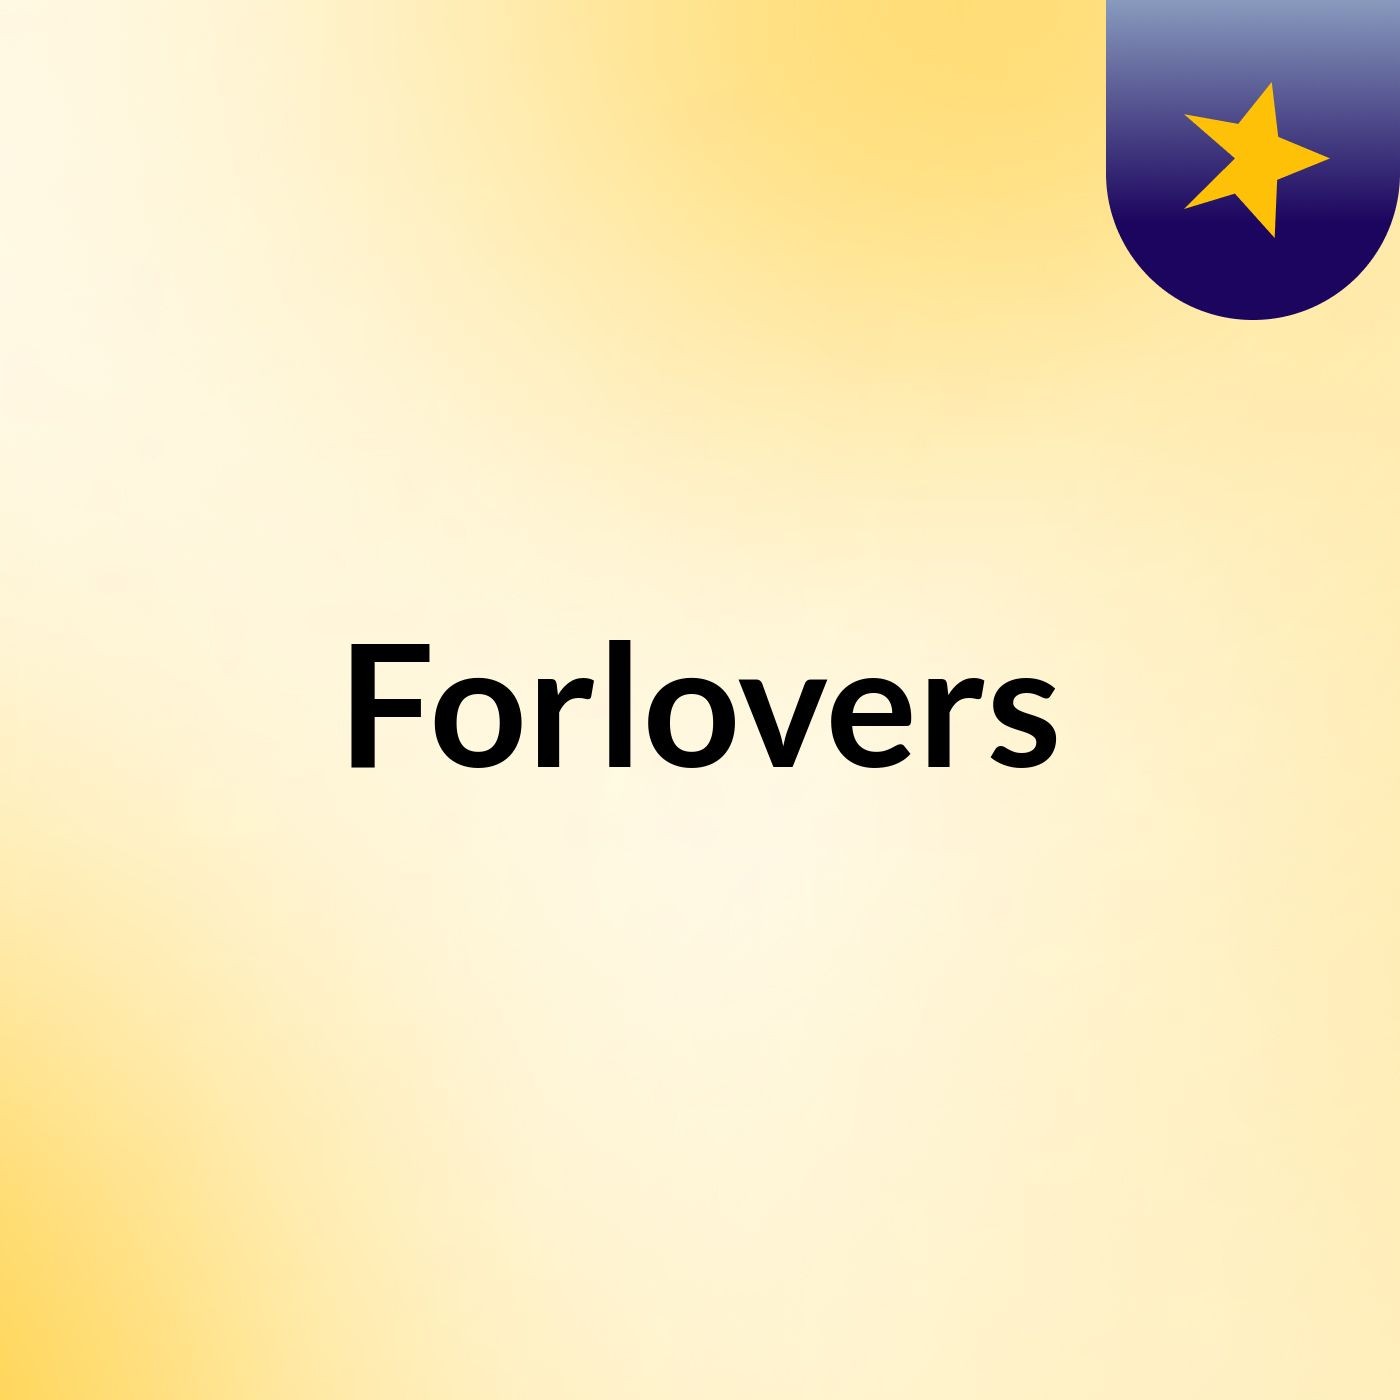 Episode 3 - Forlovers